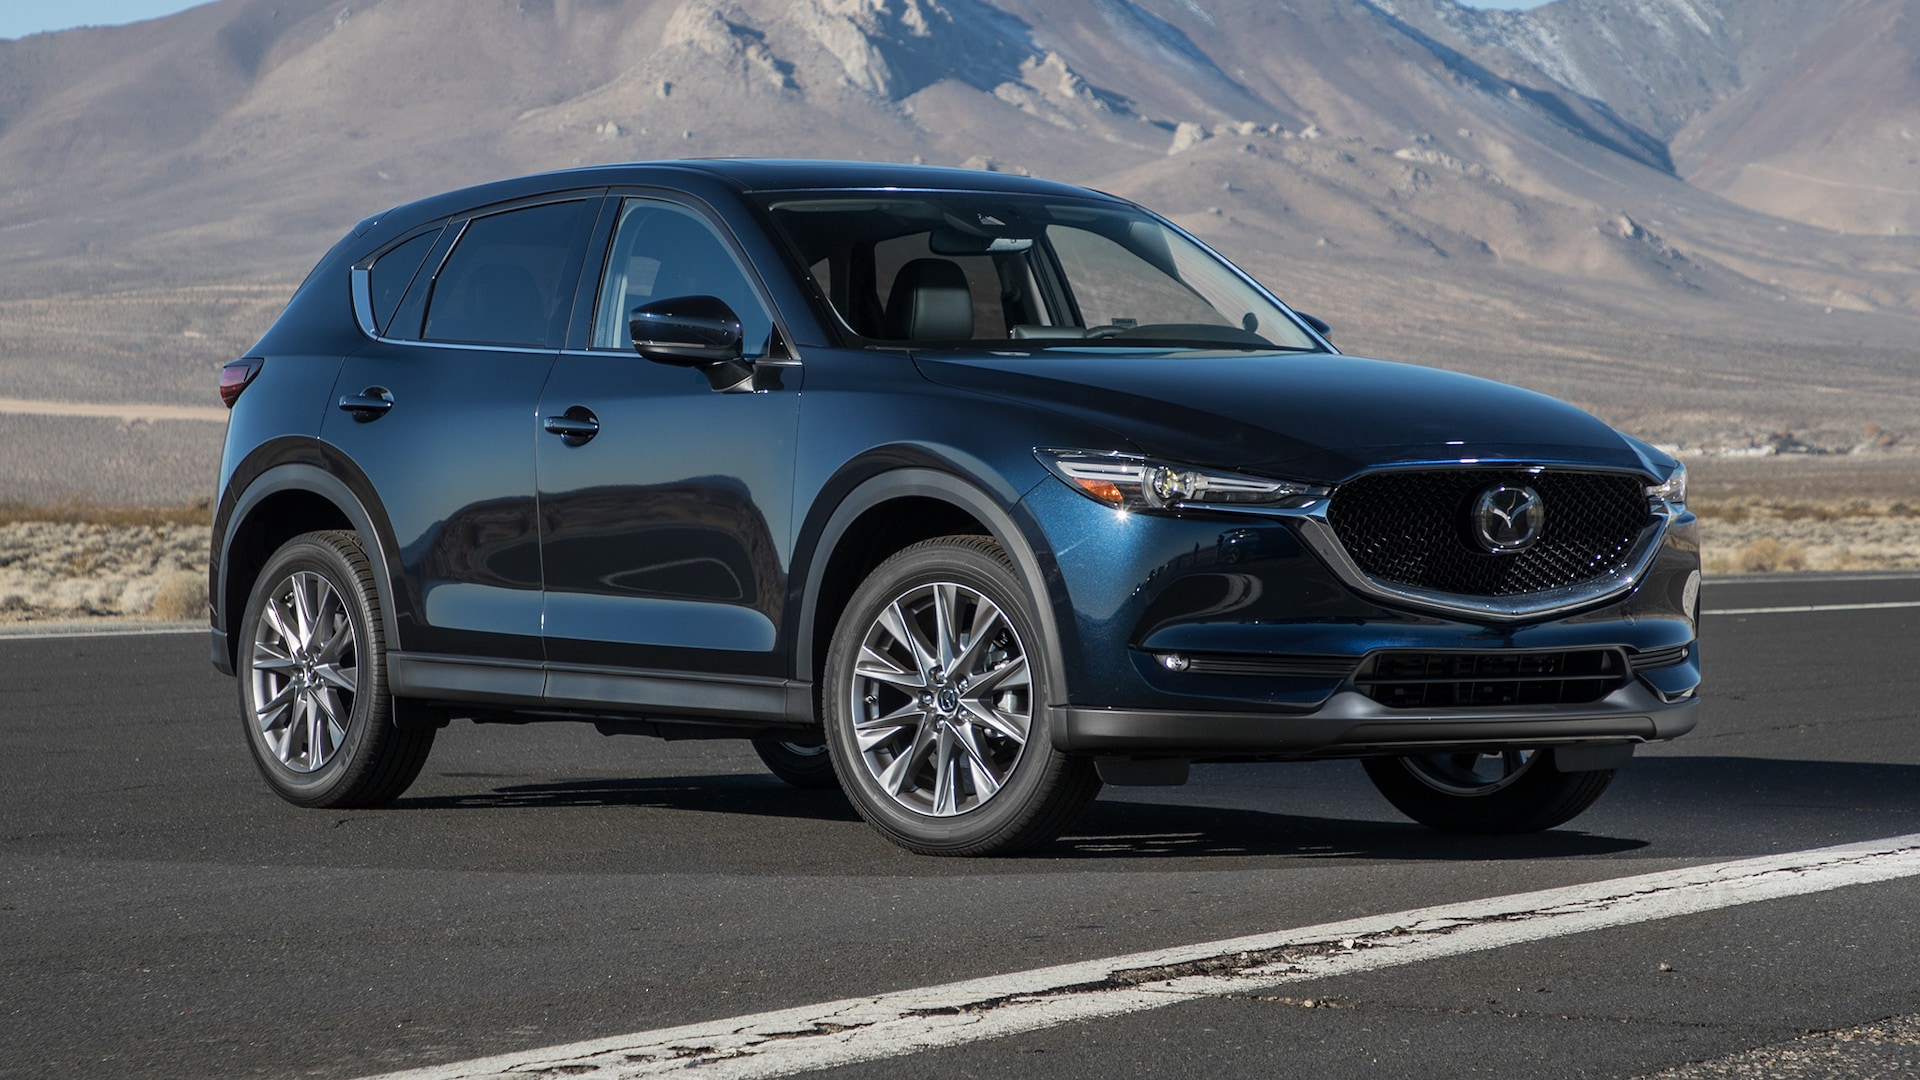 2019 Mazda CX-5: Why I'd Buy It - Scott Evans